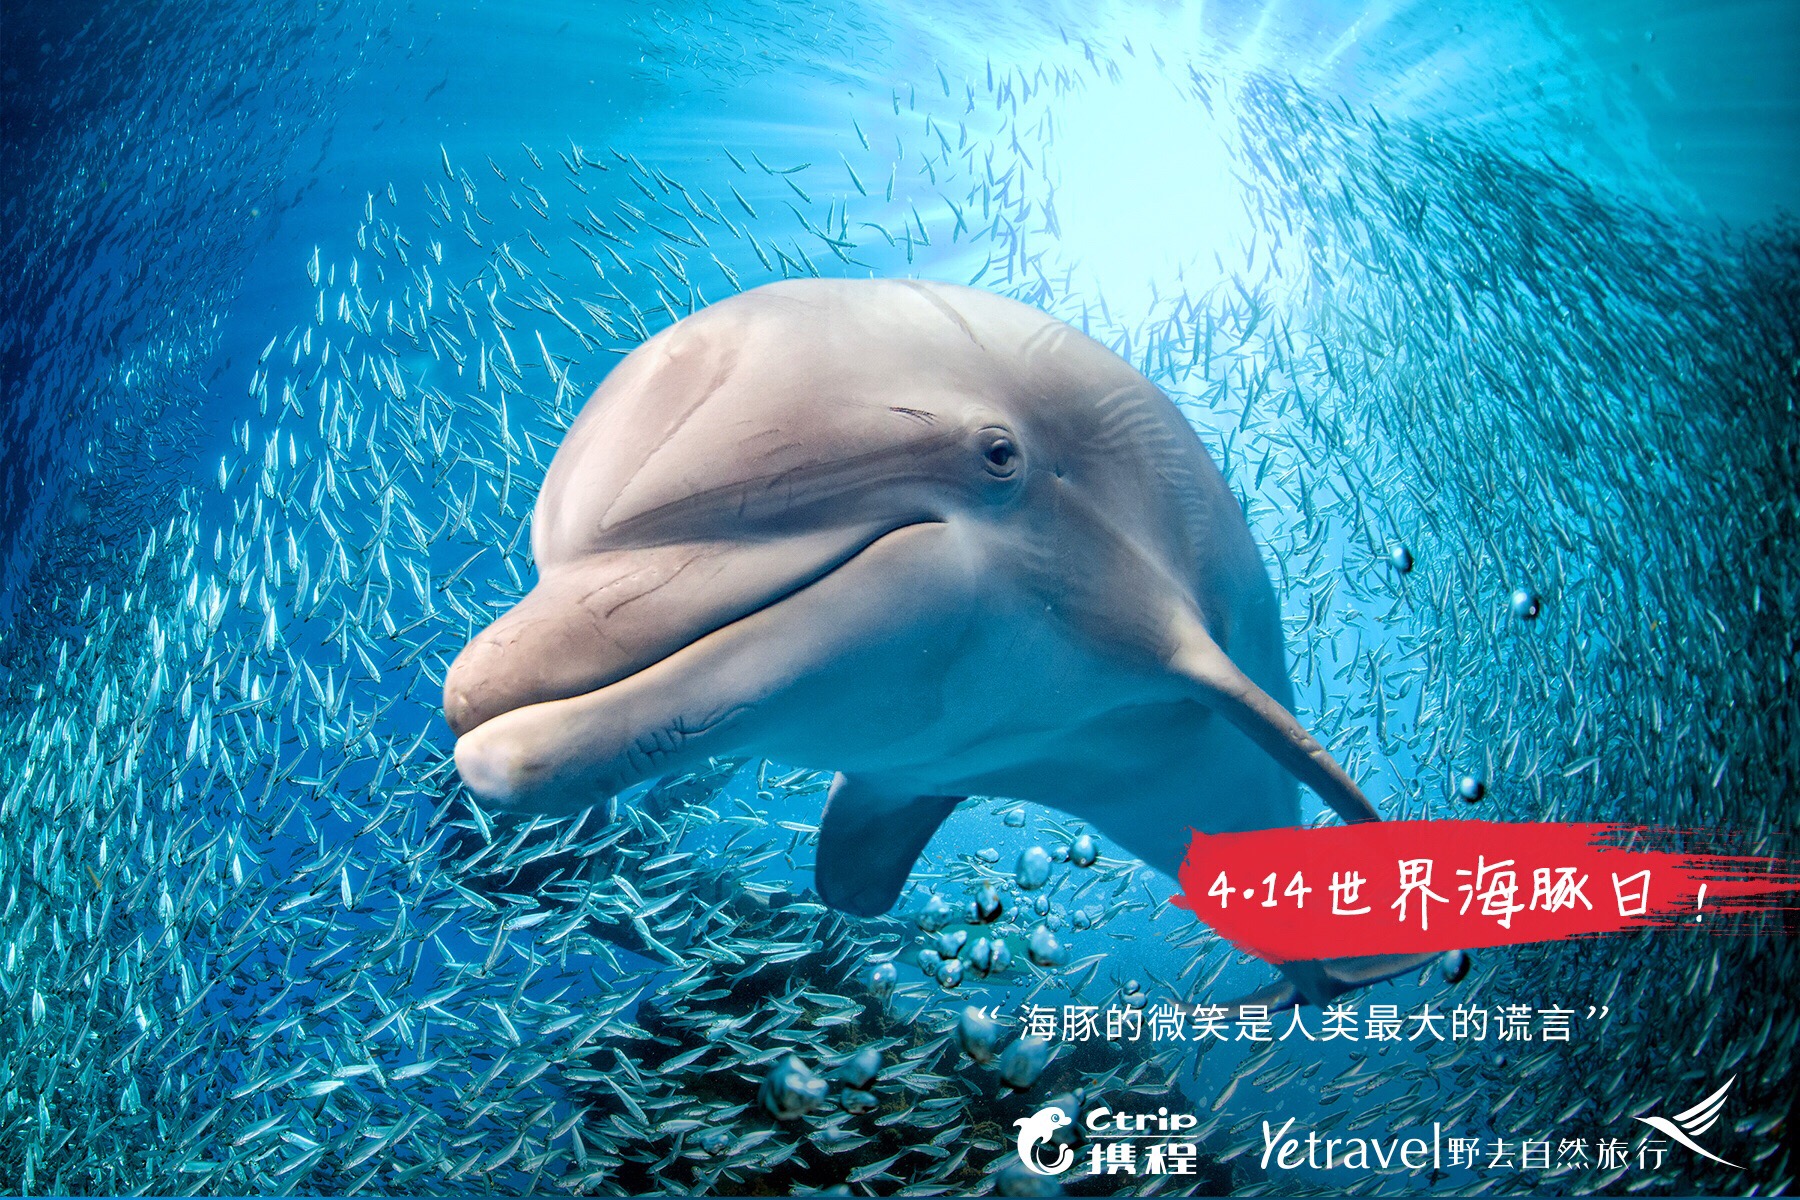 今天是世界海豚日，这个日期的设立旨在提升公众对这种可爱海洋生物的了解和保护意识。  海豚是一种很聪明